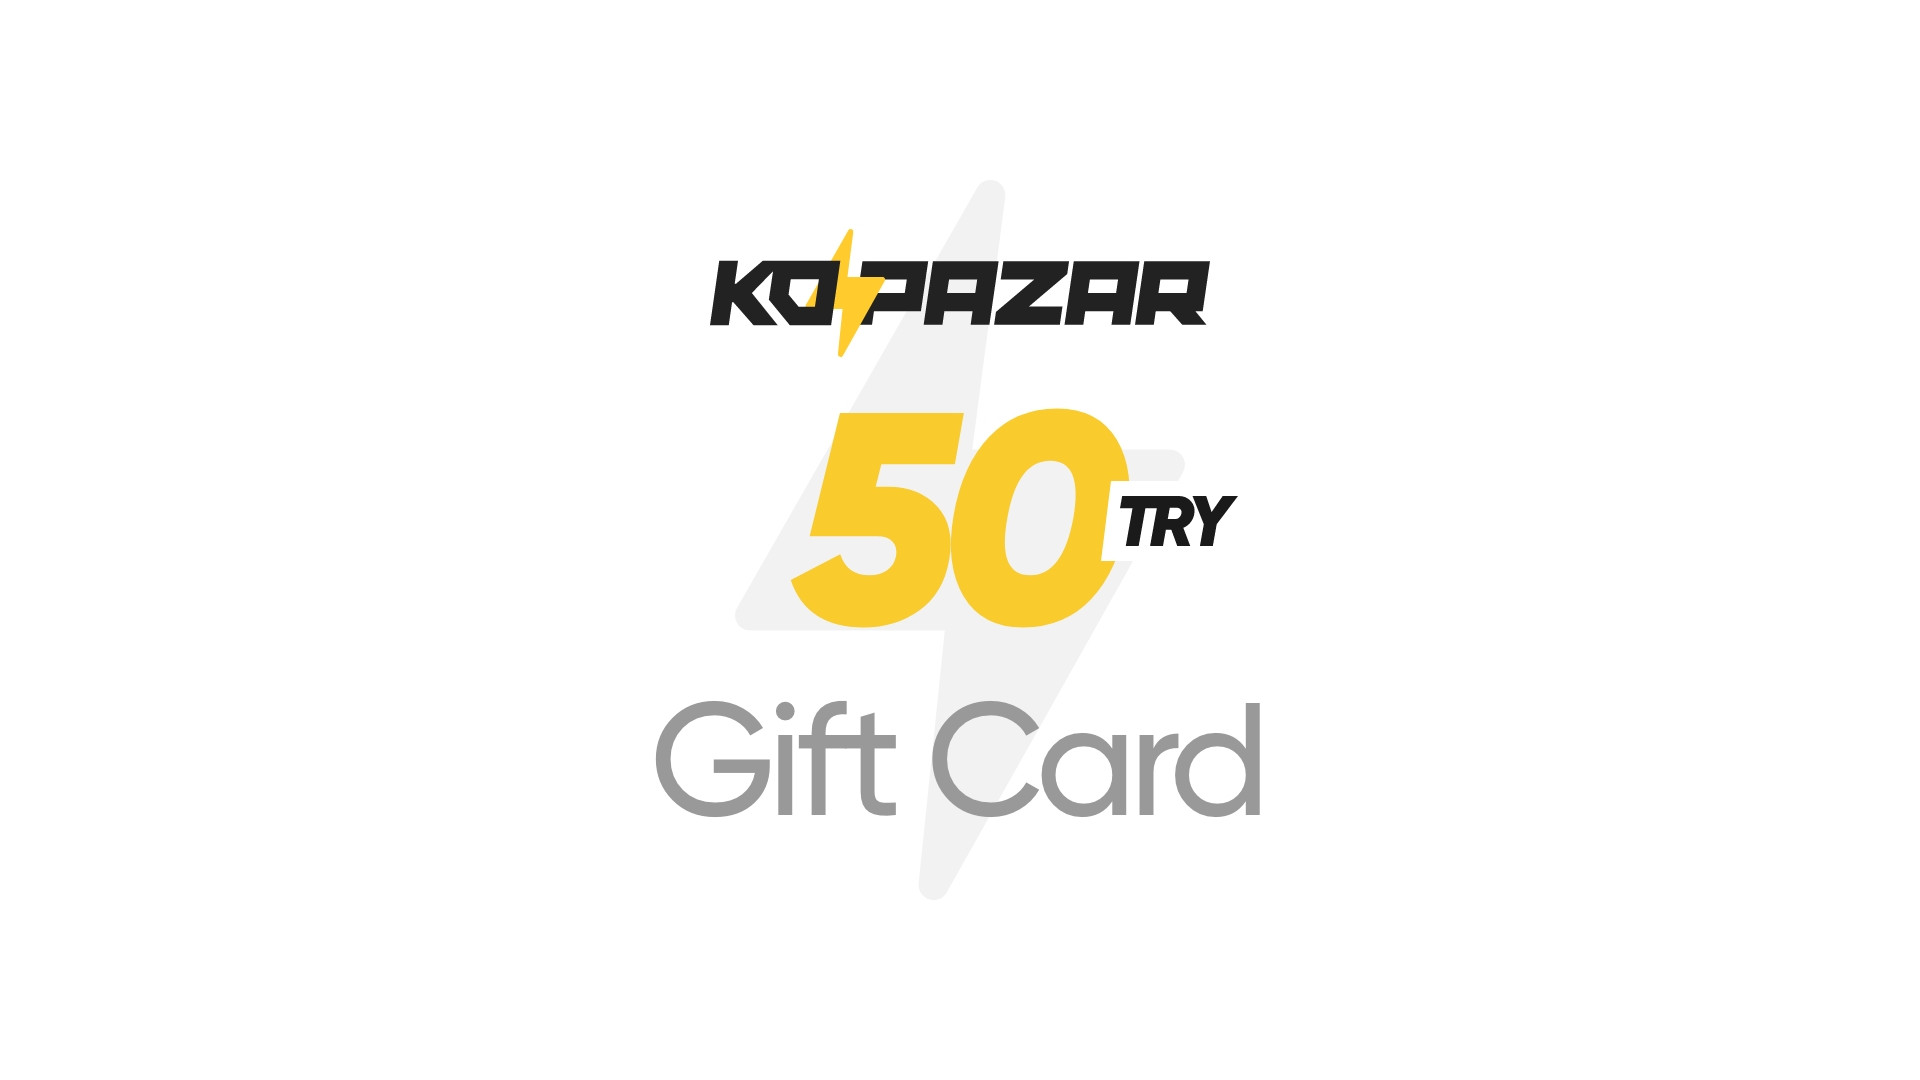 Kopazar 50 TRY Gift Card, 2.09$